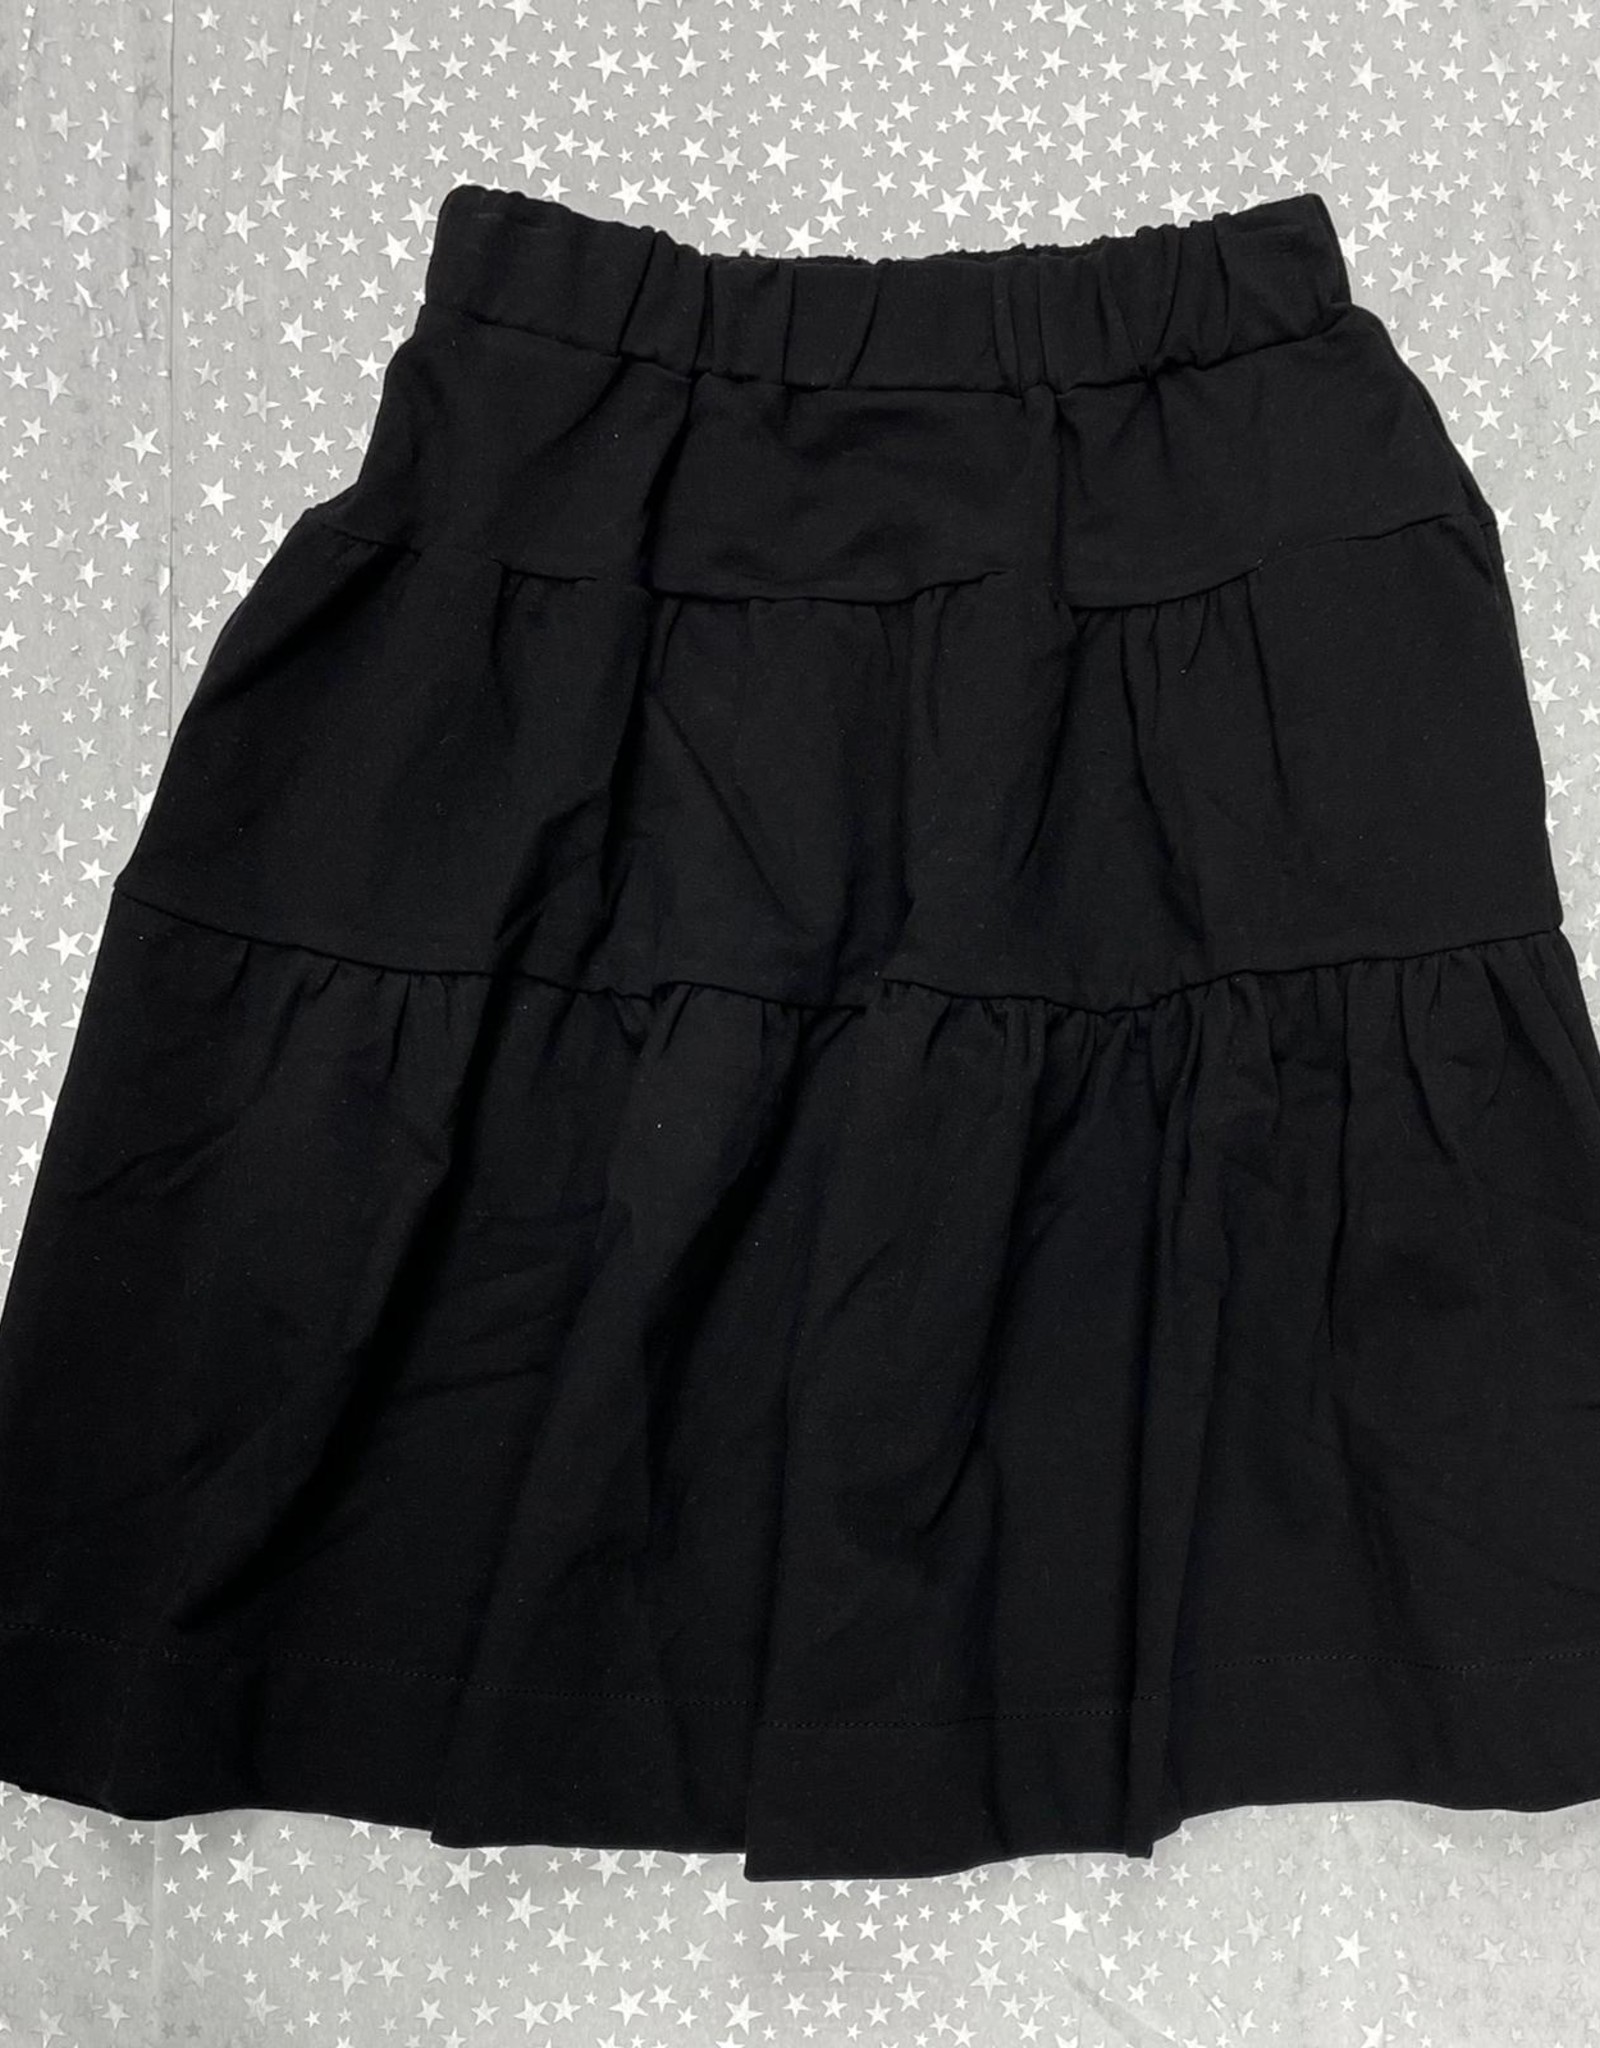 MeMe Basics MeMe Basics Black Tiered Skirt with Hidden Pockets